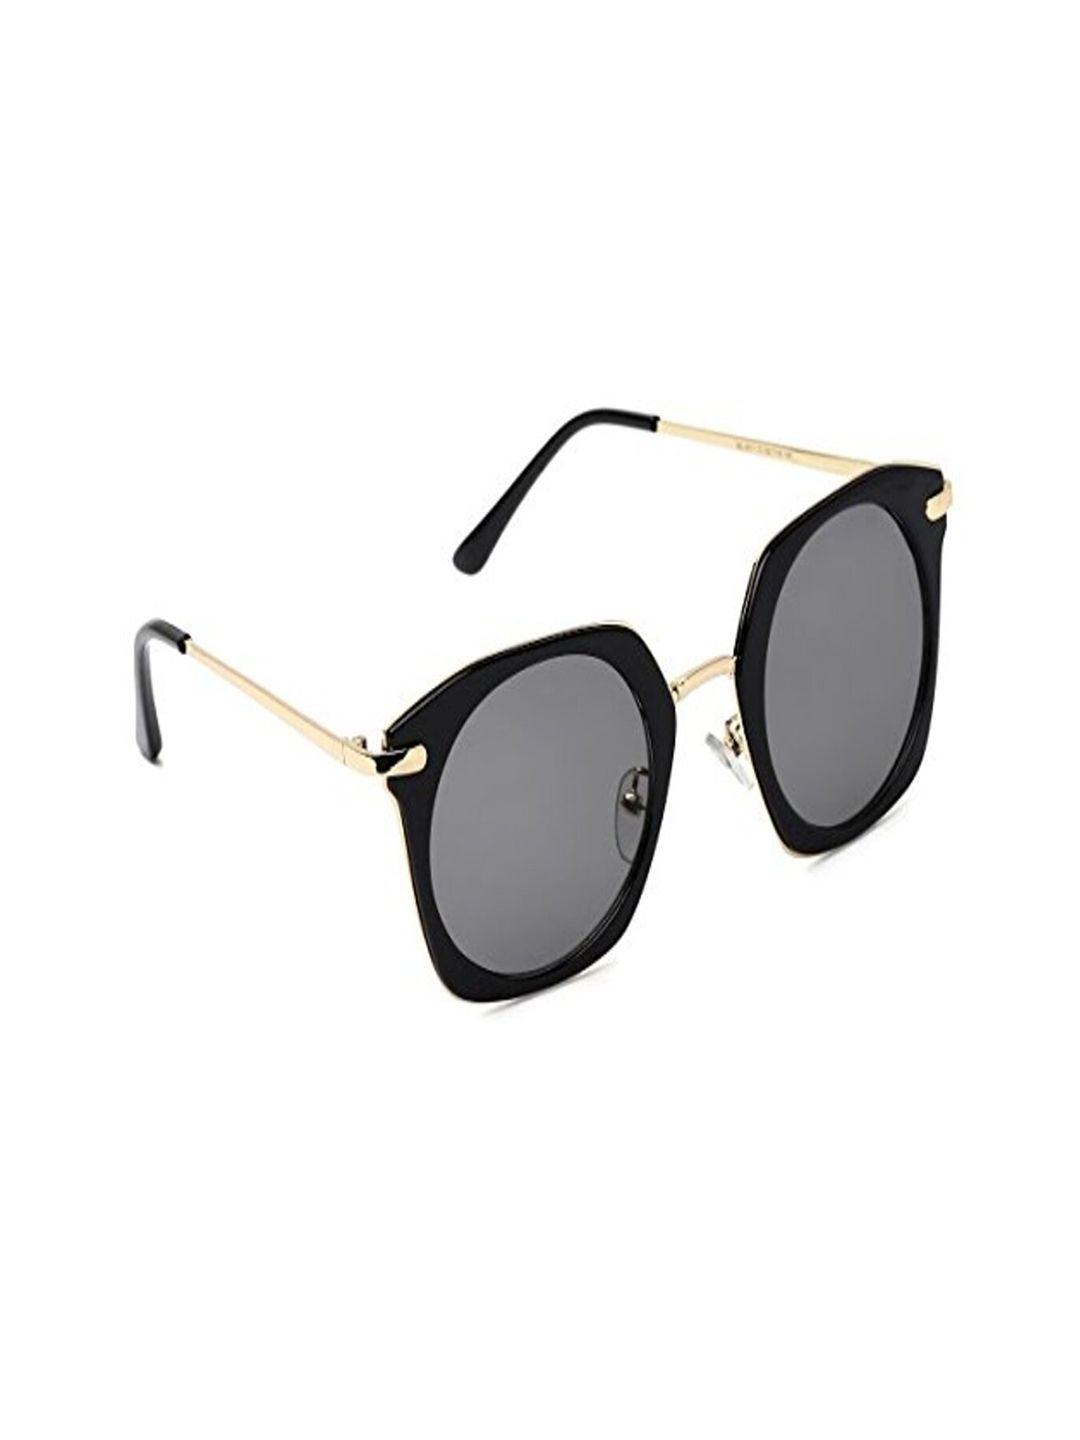 marc louis unisex grey lens oversized sunglasses marc louis 4011 c1 grey(52)